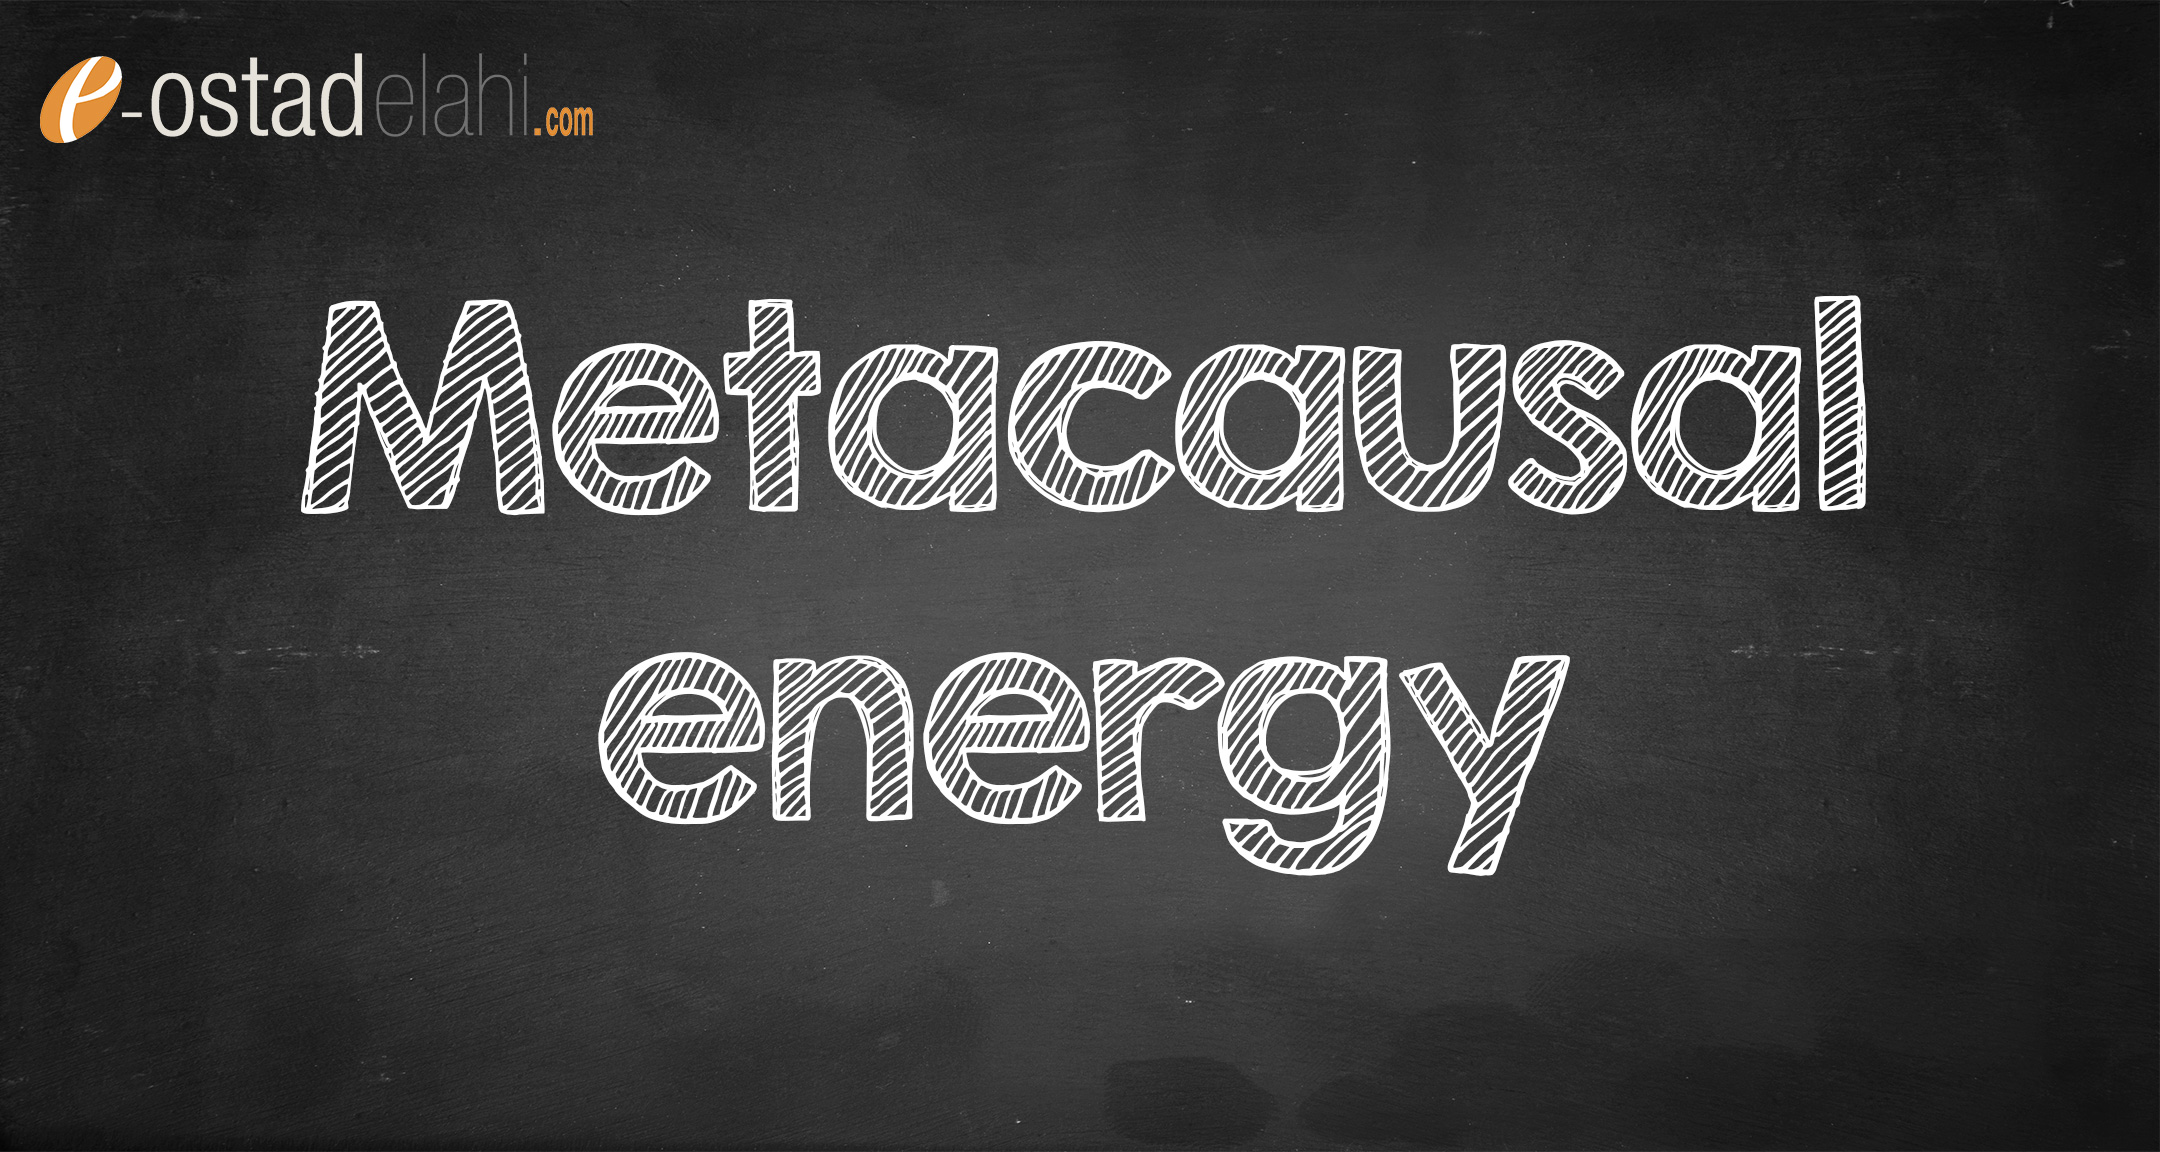 Metacausal energy